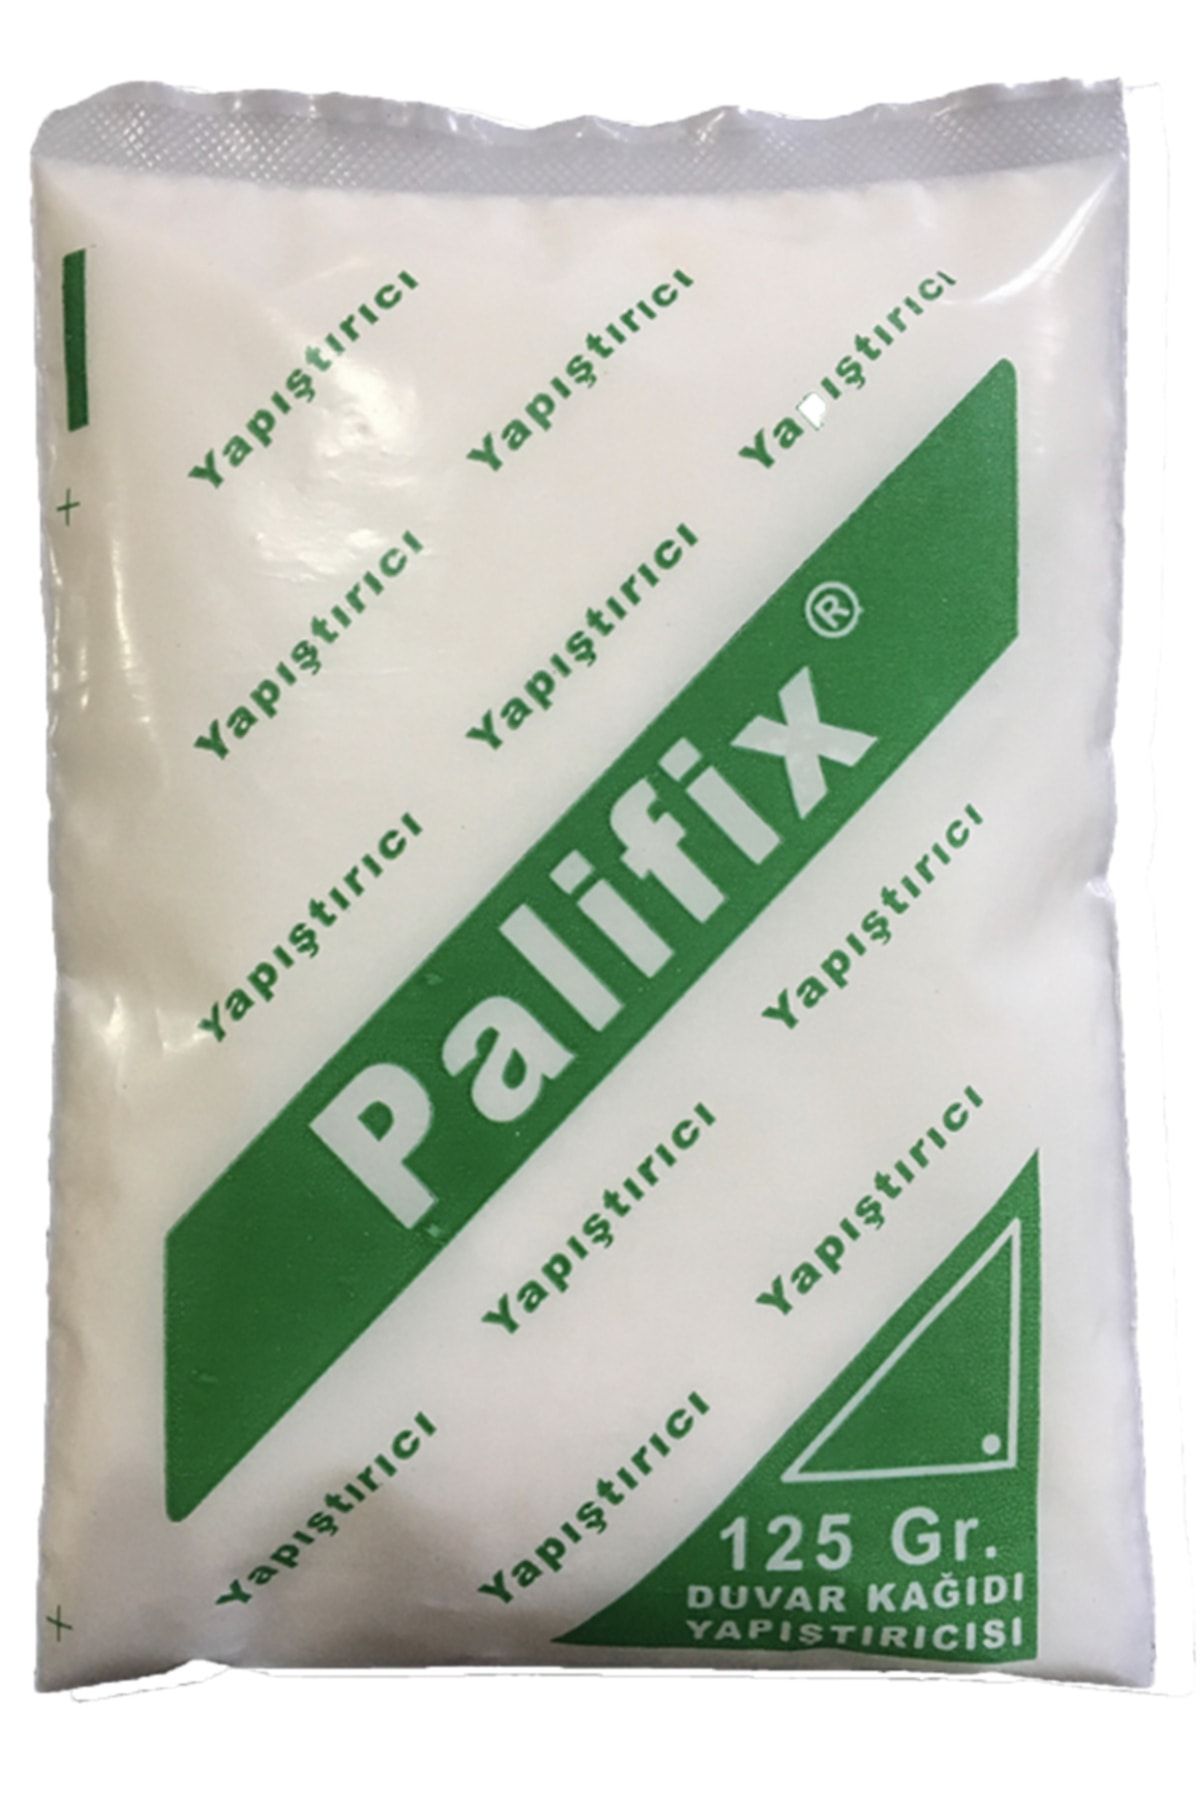 Palifix Eldivenli 125 gram Duvar Kağıdı Yapıştırıcısı Tutkalı Glitolin